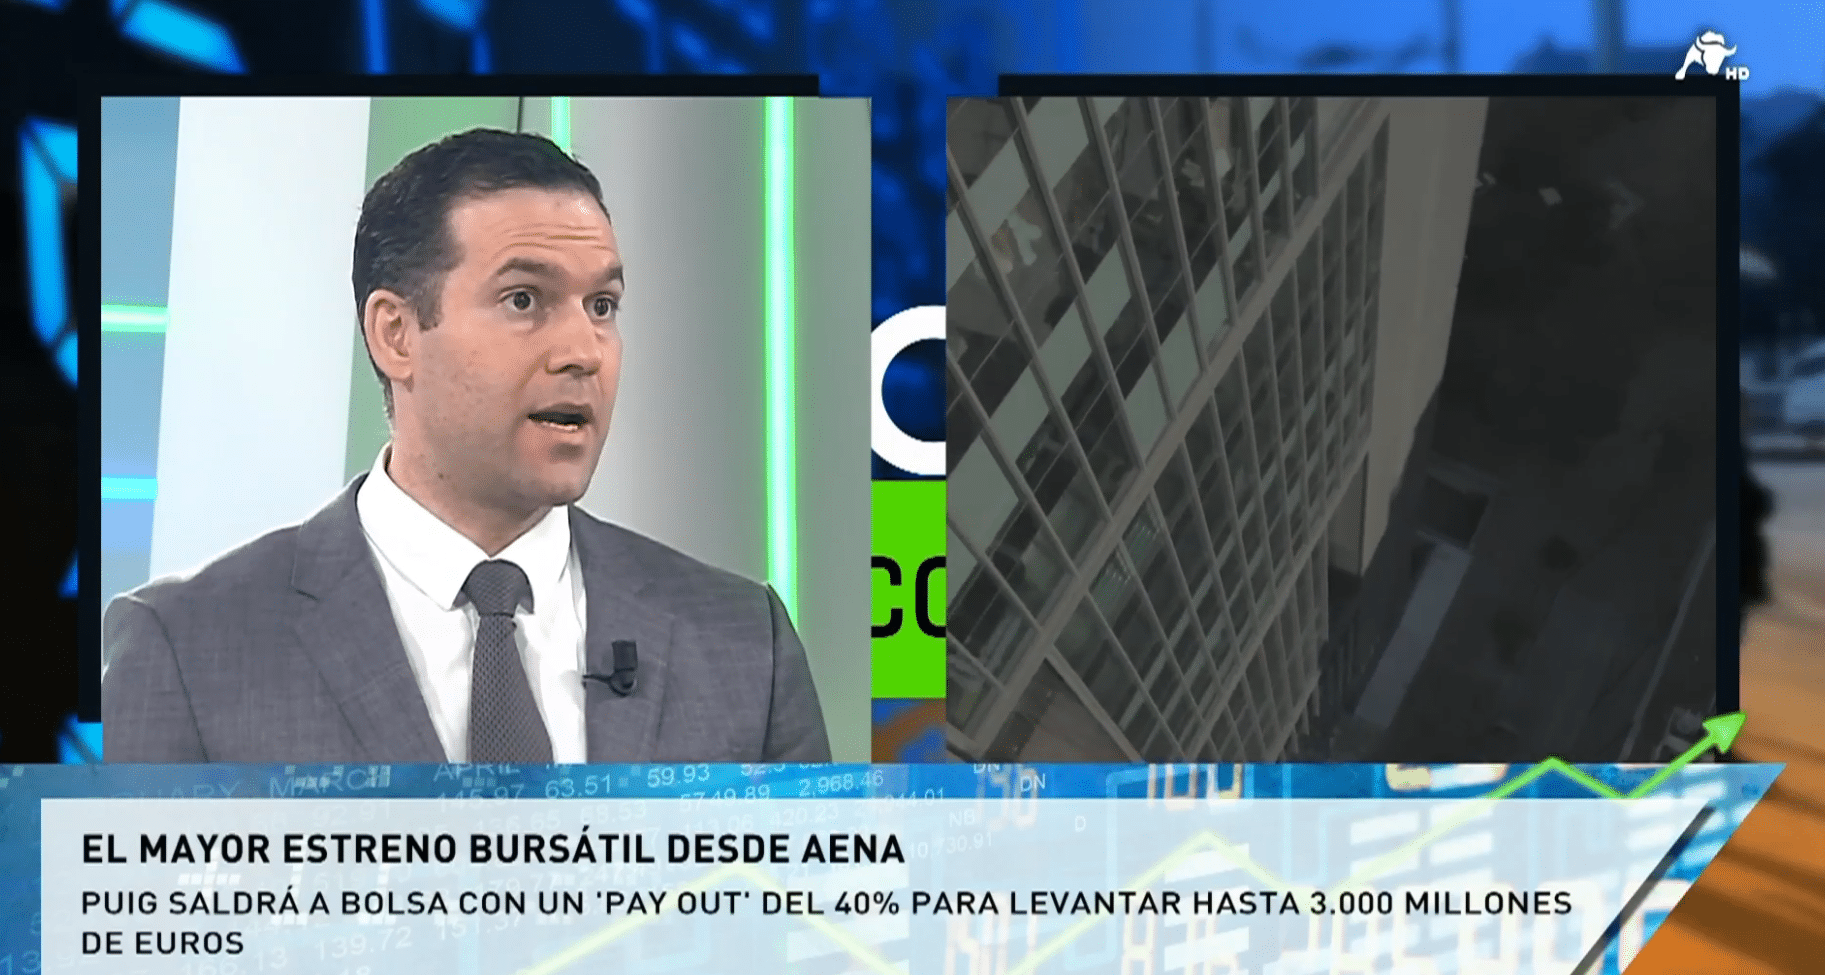  Joaquín Robles, sobre la salida a Bolsa de Puig: “La empresa está controlada por las familias y eso puede dar estabilidad”